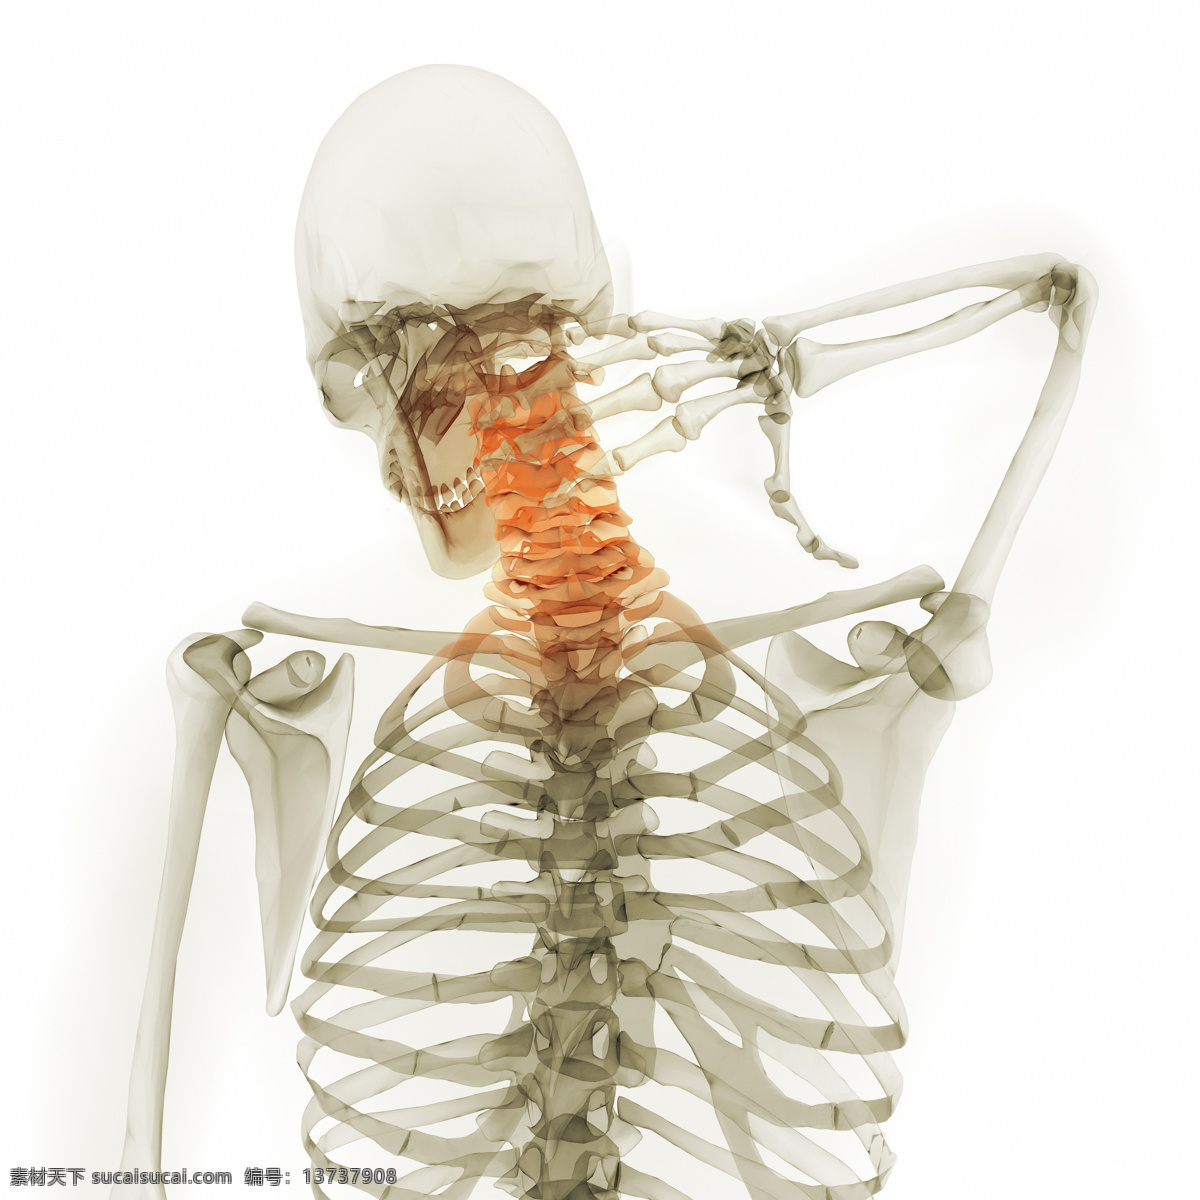 人体 脊椎 x 光 图像 透视图 x光 医疗主题 医疗护理 现代科技